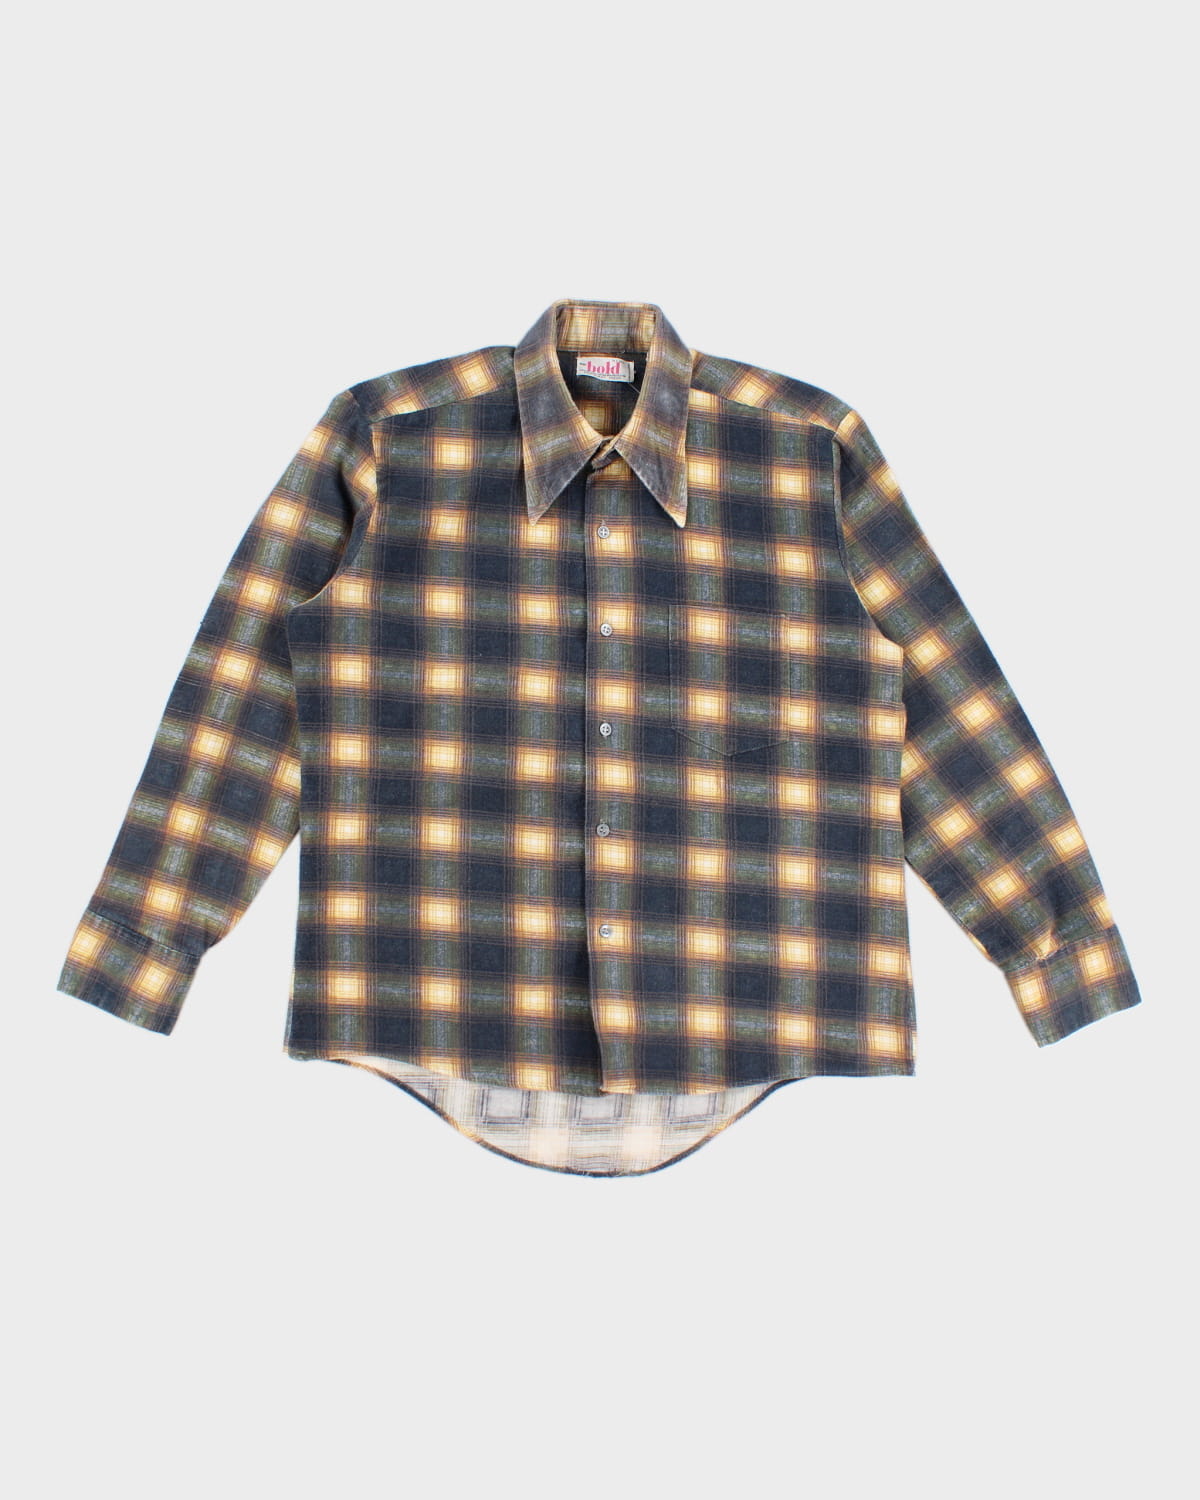 Vintage 70s mr. Bold Flannel Shirt - L